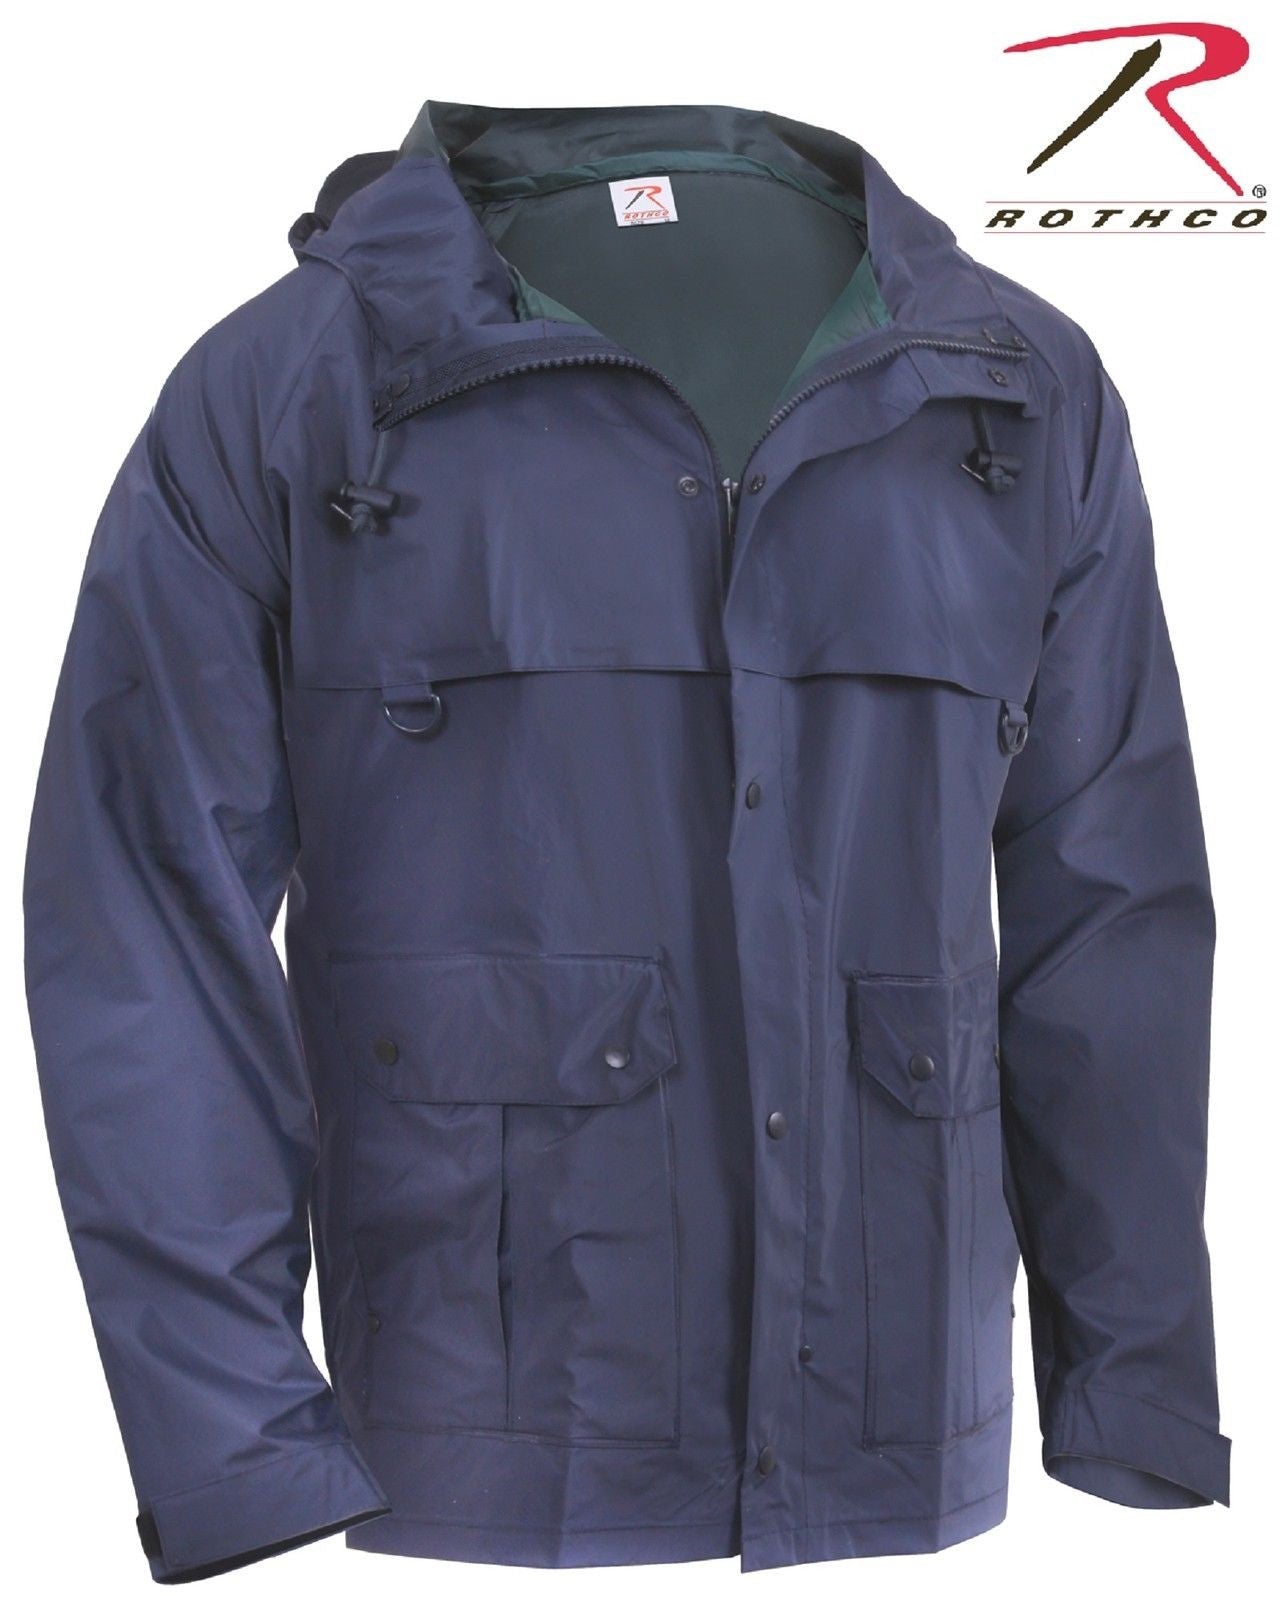 Rothco Mens Navy Blue Waterproof Microlite PVC Coated Nylon Rain Coat Jacket